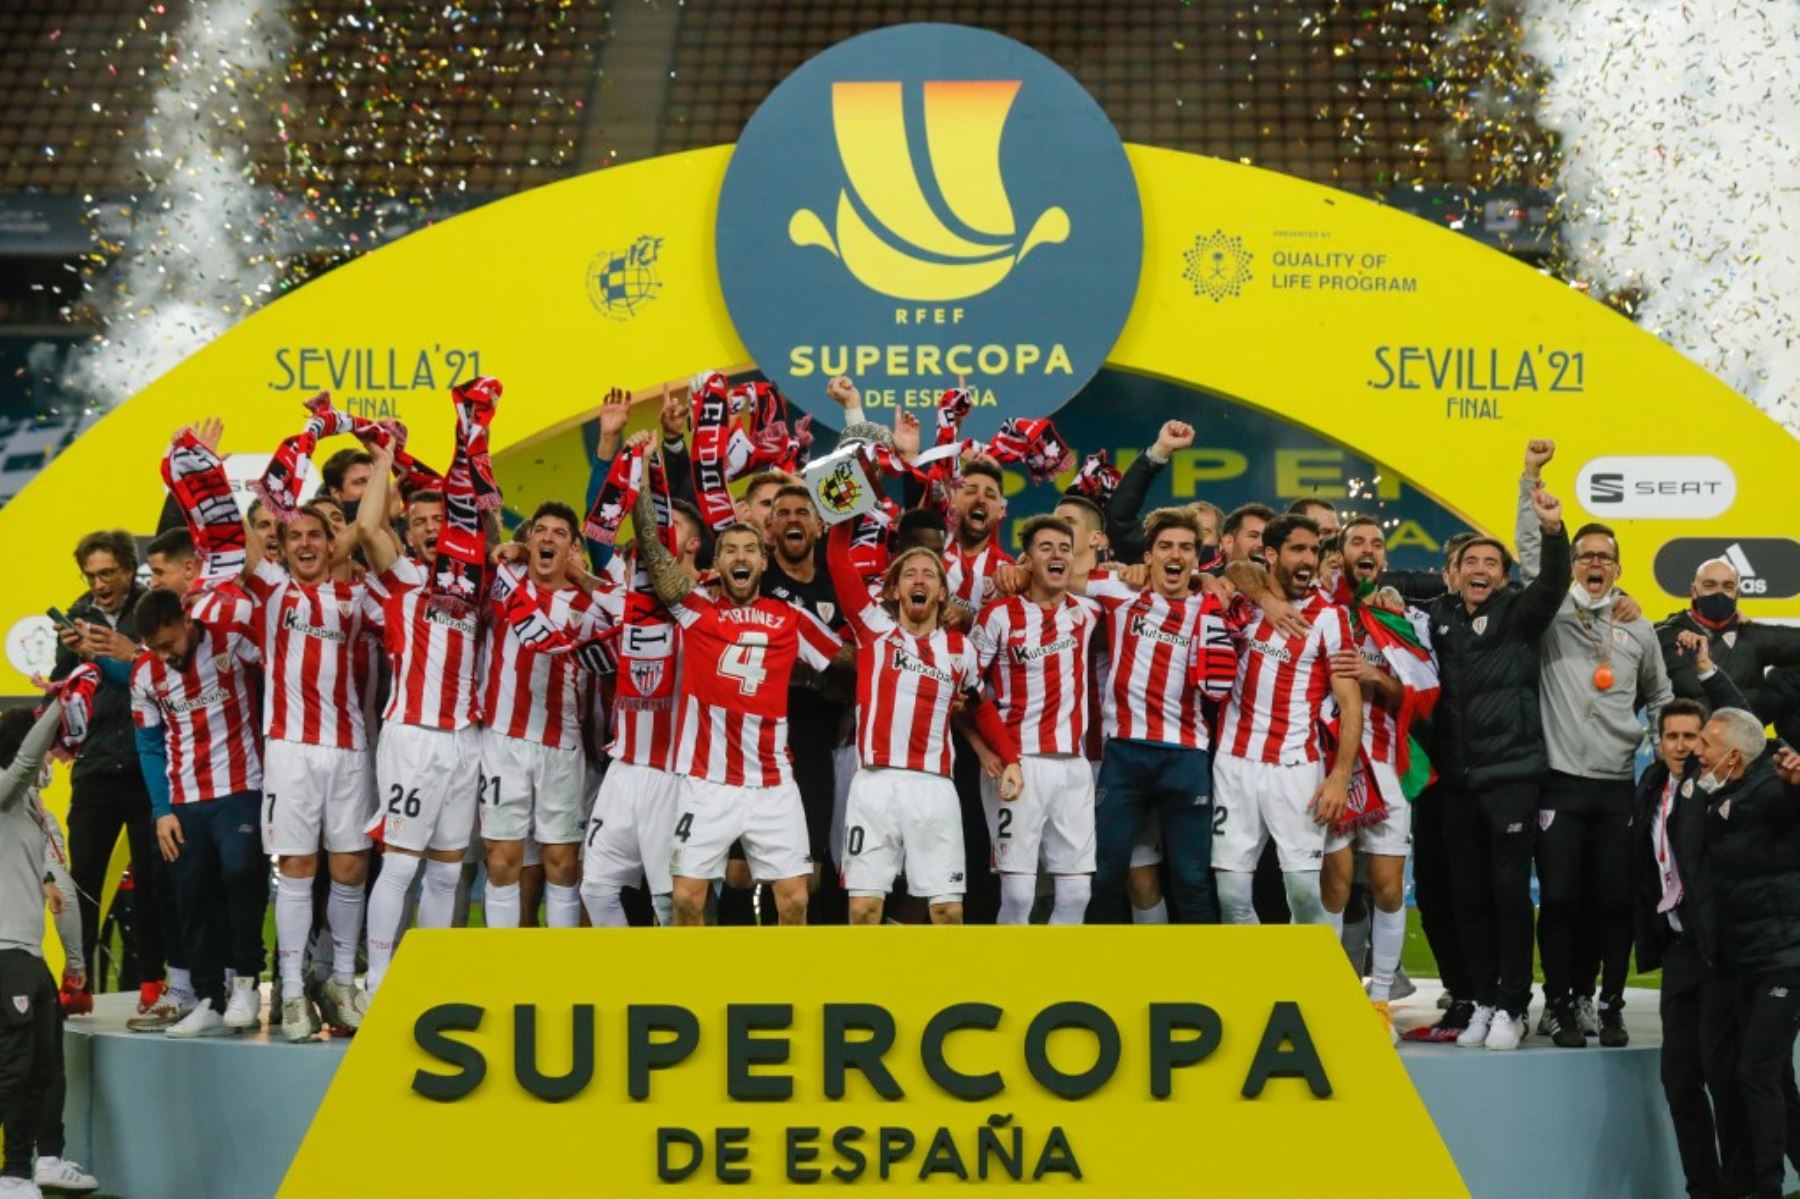 Jugadores del Athletic de Bilbao celebran tras ganar la final de la Supercopa de España entre el FC Barcelona y el Athletic Club de Bilbao en el estadio de La Cartuja de Sevilla el 17 de enero de 2021. Foto: AFP